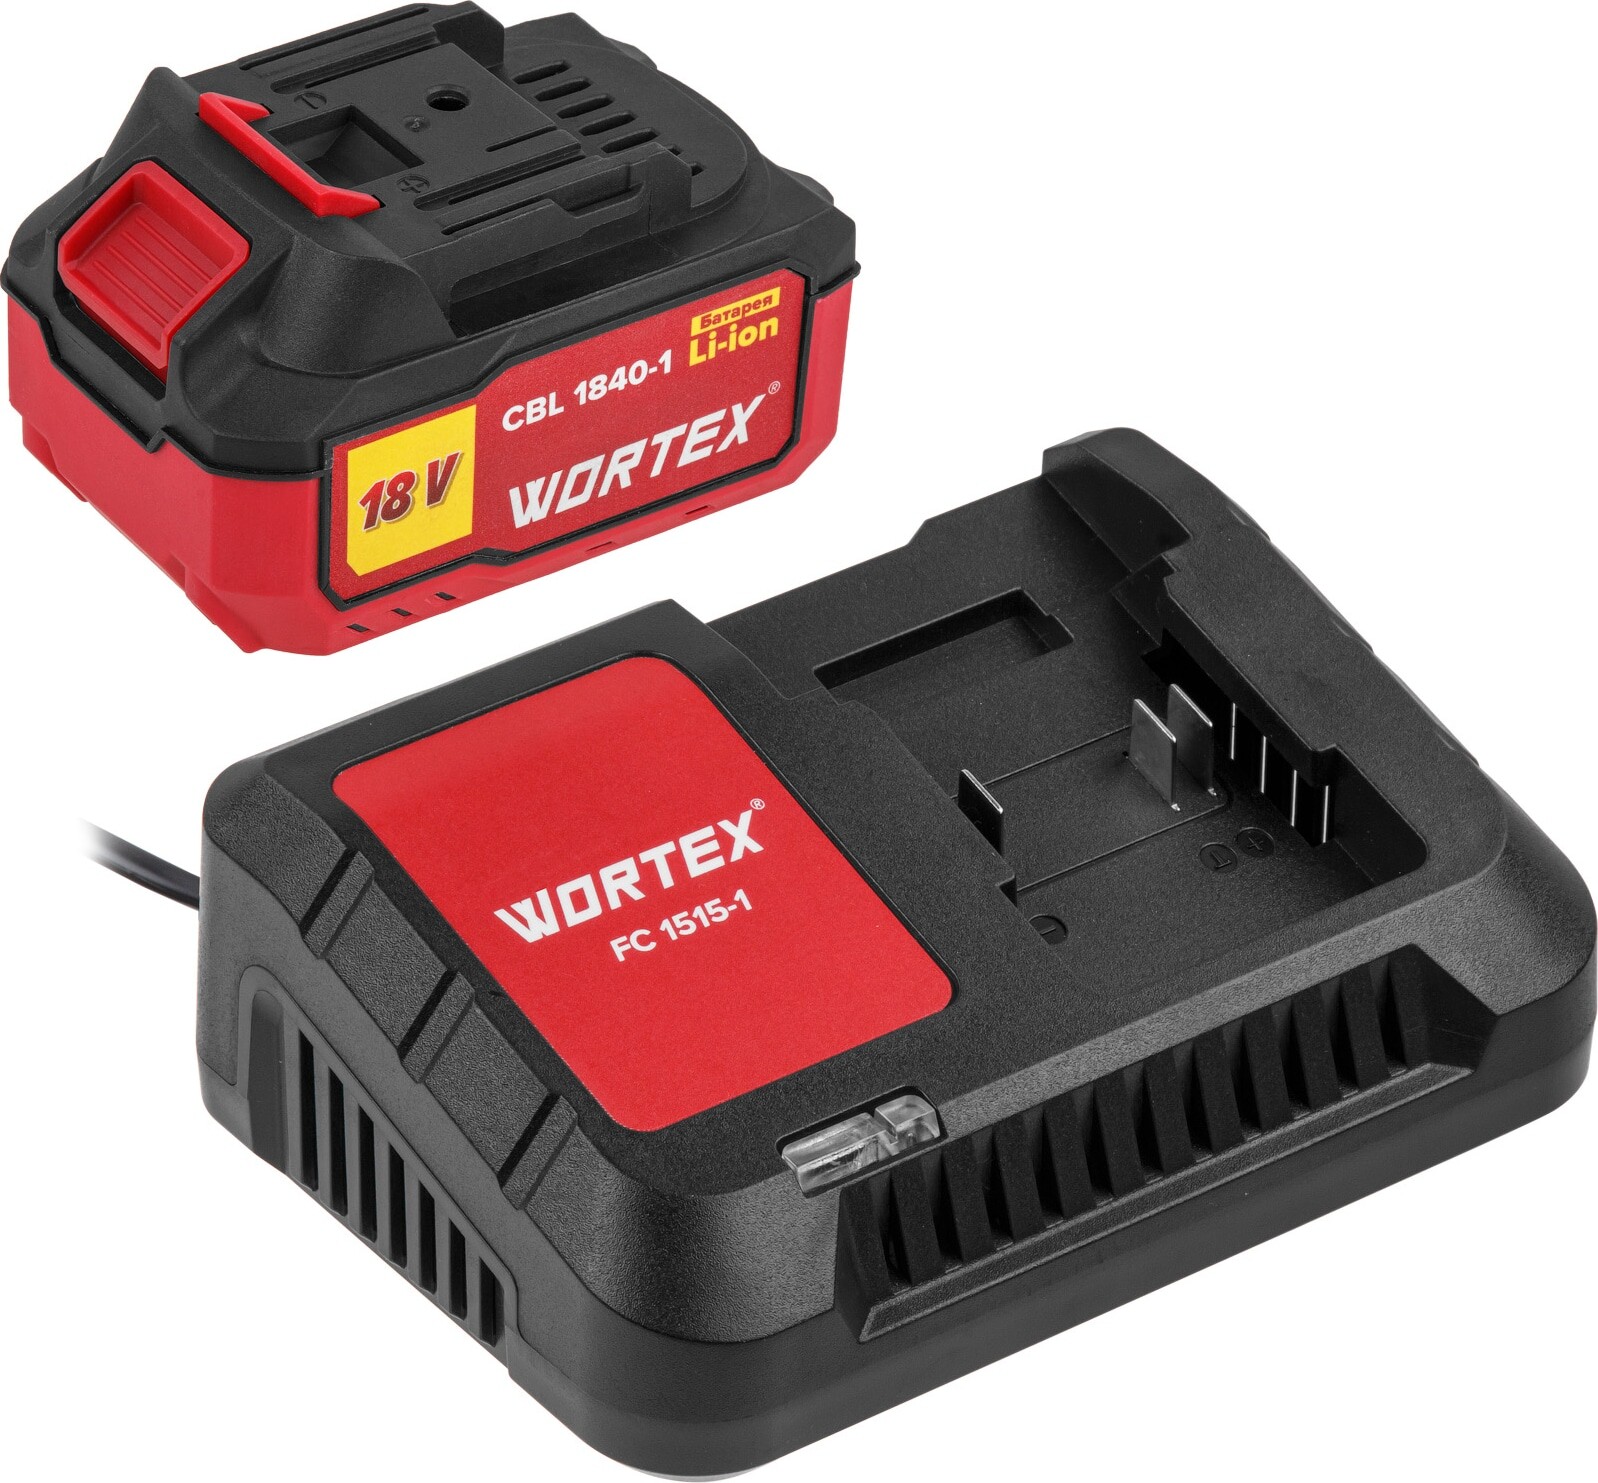 Комплект аккумулятор 18В 4Ач и зарядное устройство WORTEX ALL1 (1329412) аккумулятор wortex cbl 1840 1 18 0 в 4 0 а ч li ion all1 18 0 в 4 0 а ч индикатор заряда обрезиненный корпус 0329187